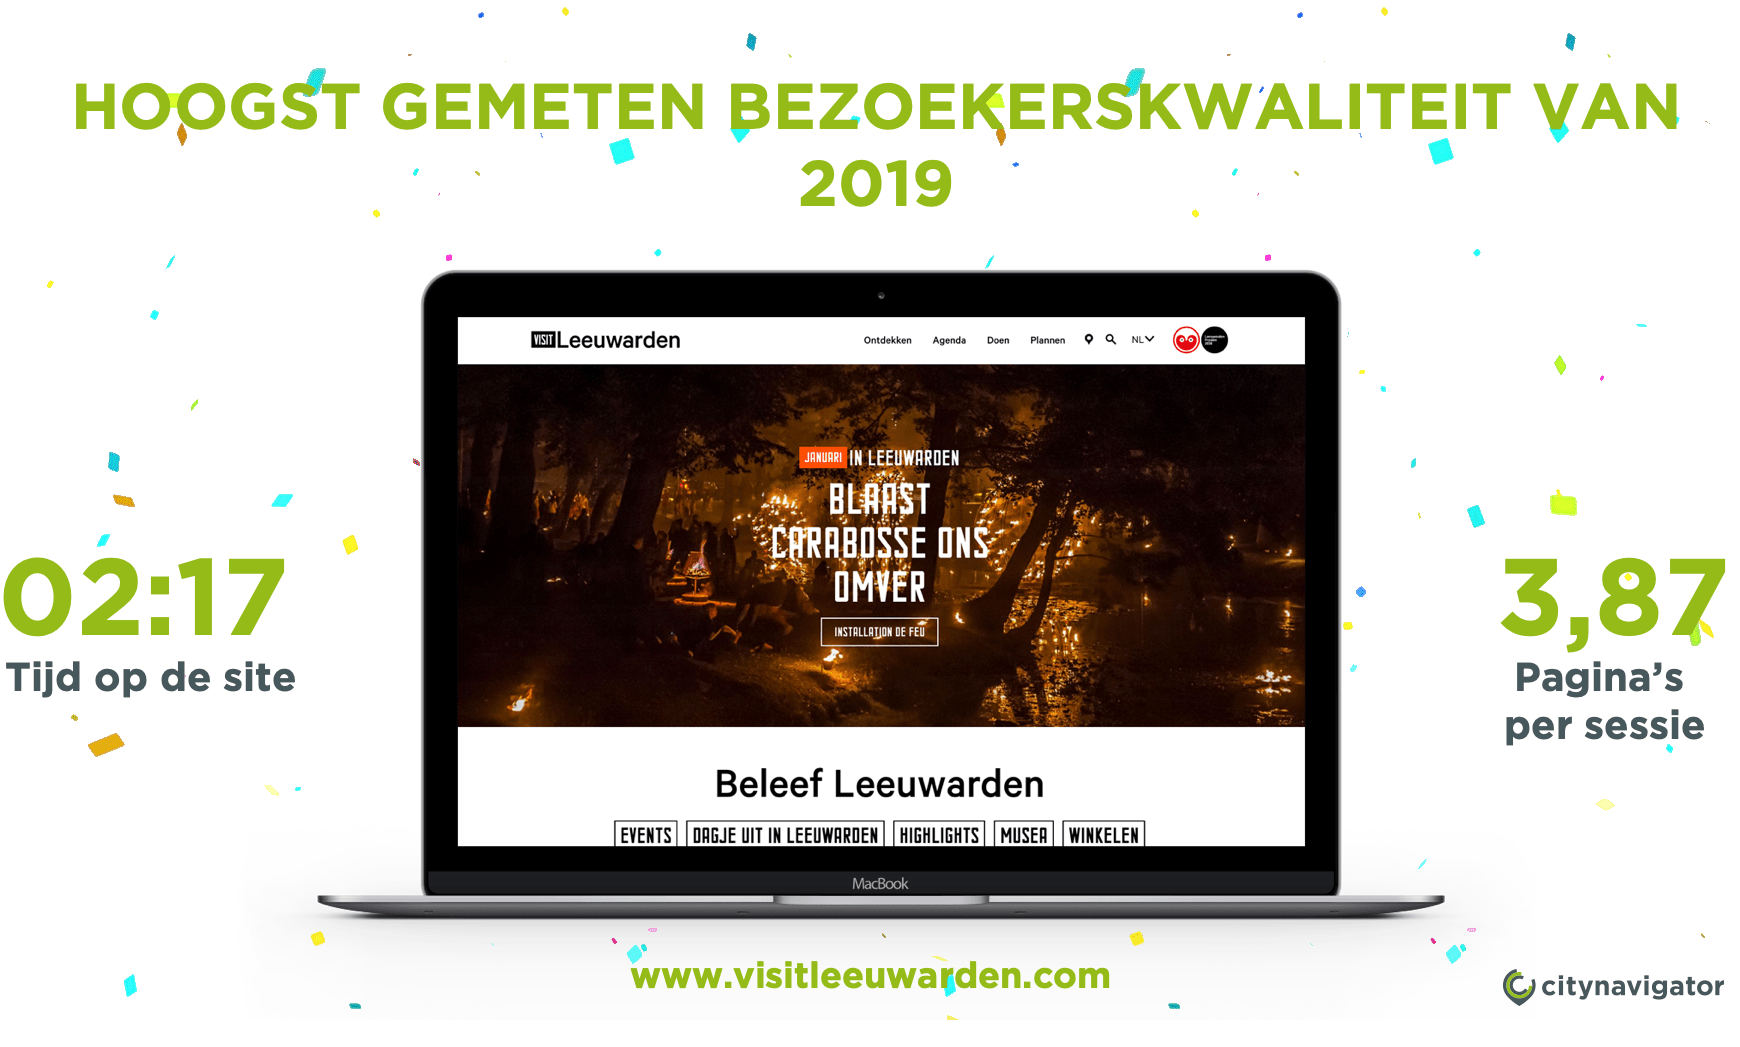 De website van Leeuwarden heeft de hoogst gemeten bezoeker kwaliteit in 2019